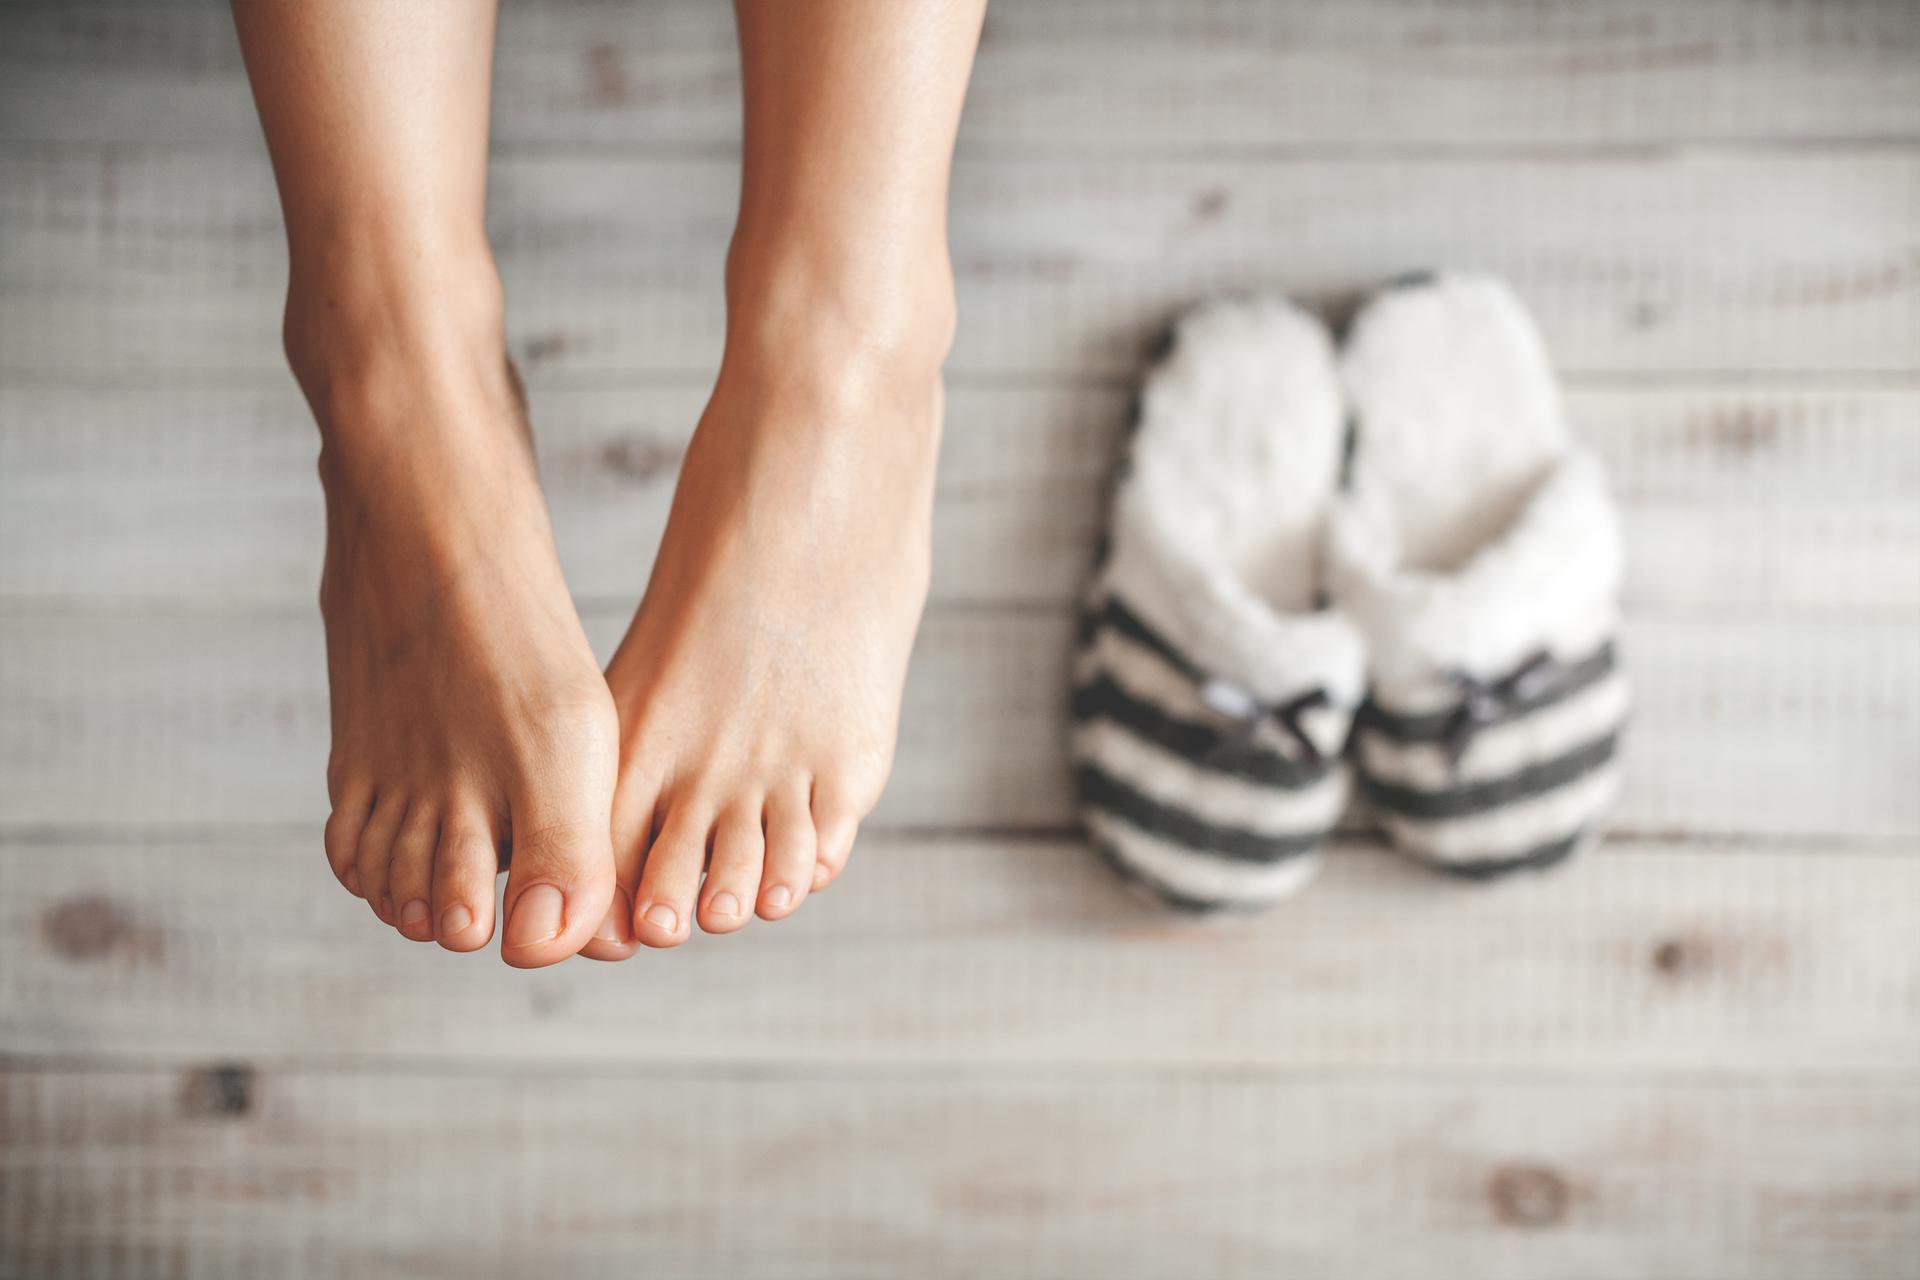 Cum să ne păstrăm picioarele frumoase și sănătoase pe timpul iernii: 8 sfaturi utile